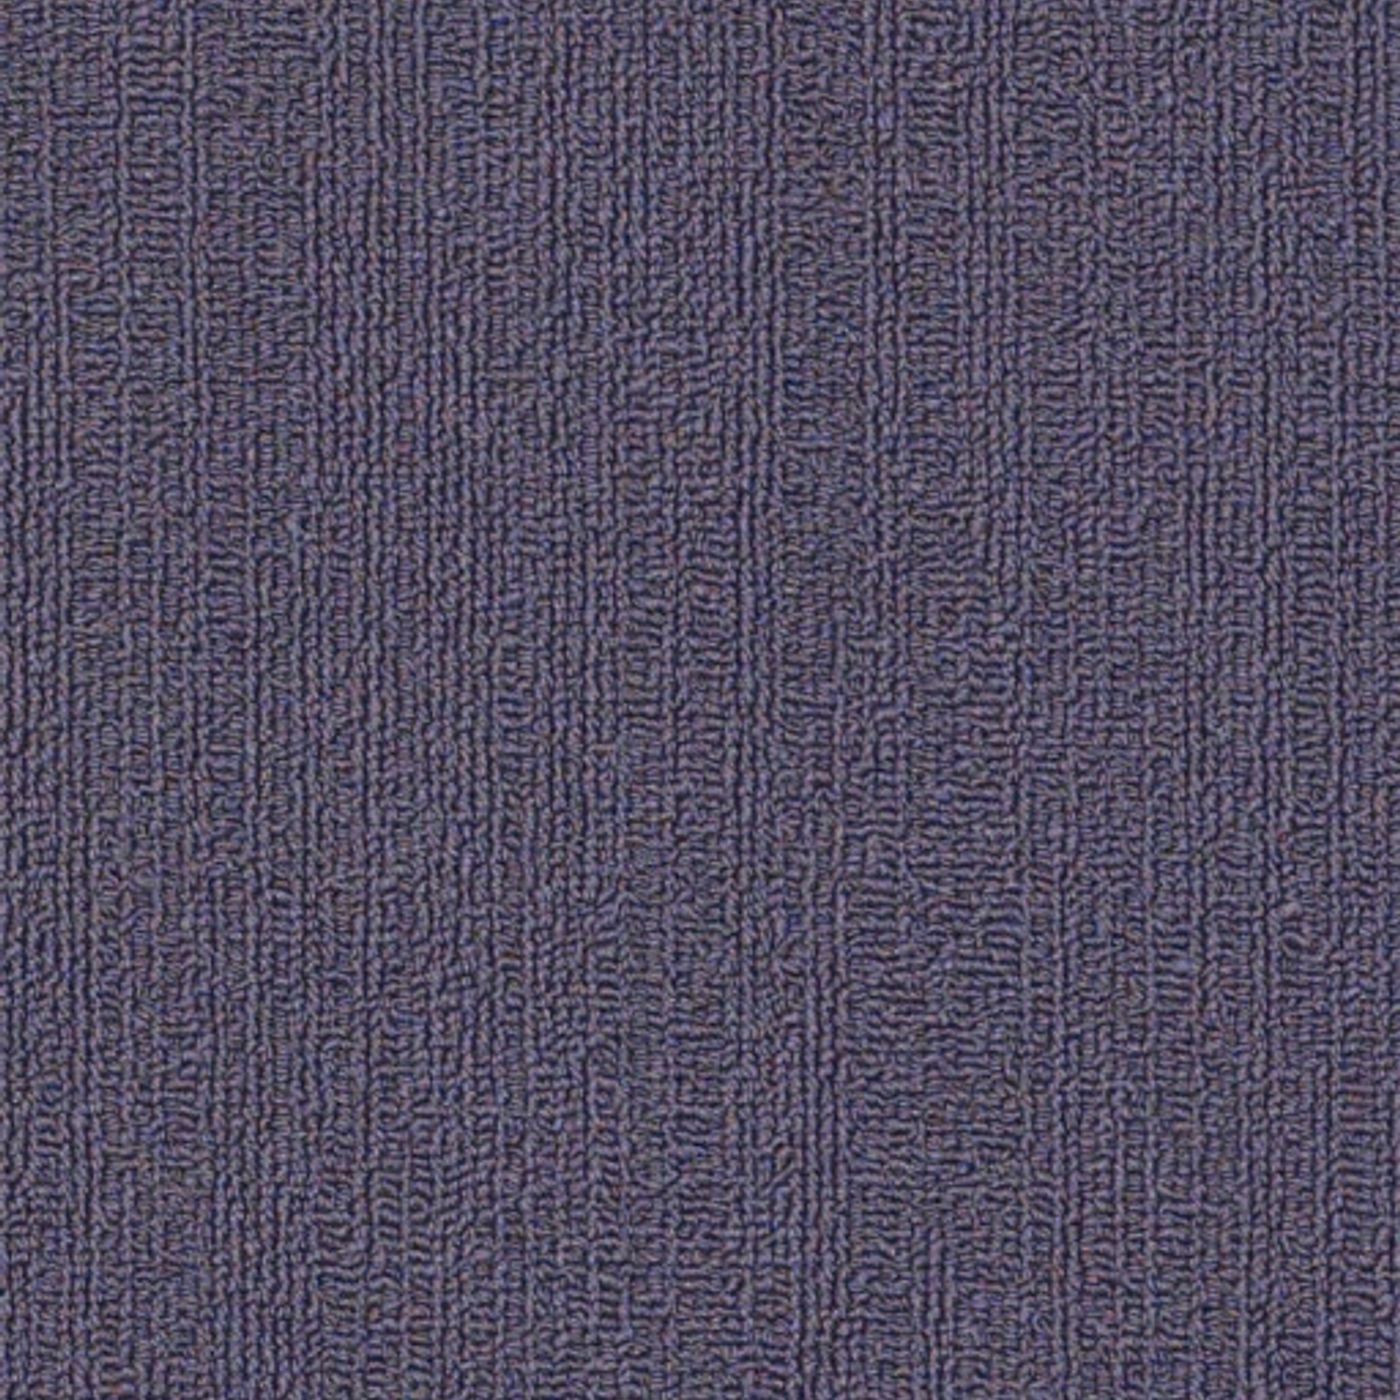 Philadelphia Commercial Color Accents Carpet Tile Plumberry 9" x 36" Premium